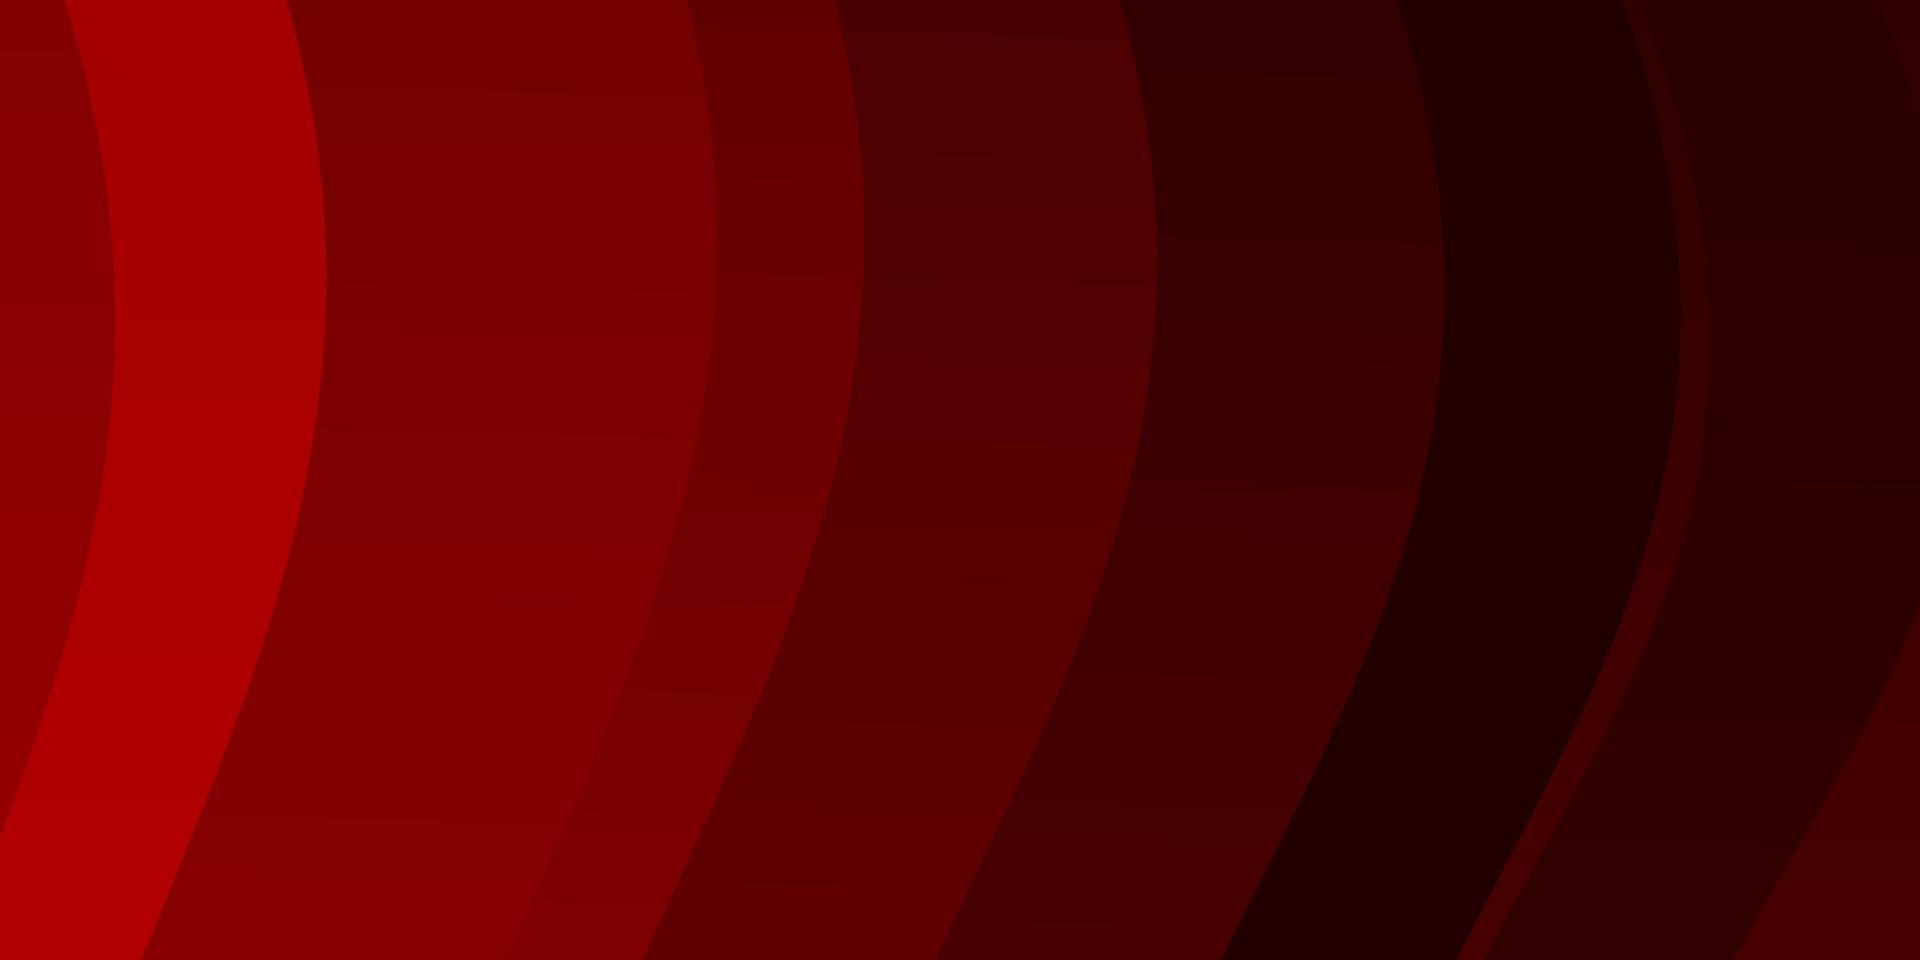 modelo de vetor vermelho escuro com linhas curvas.